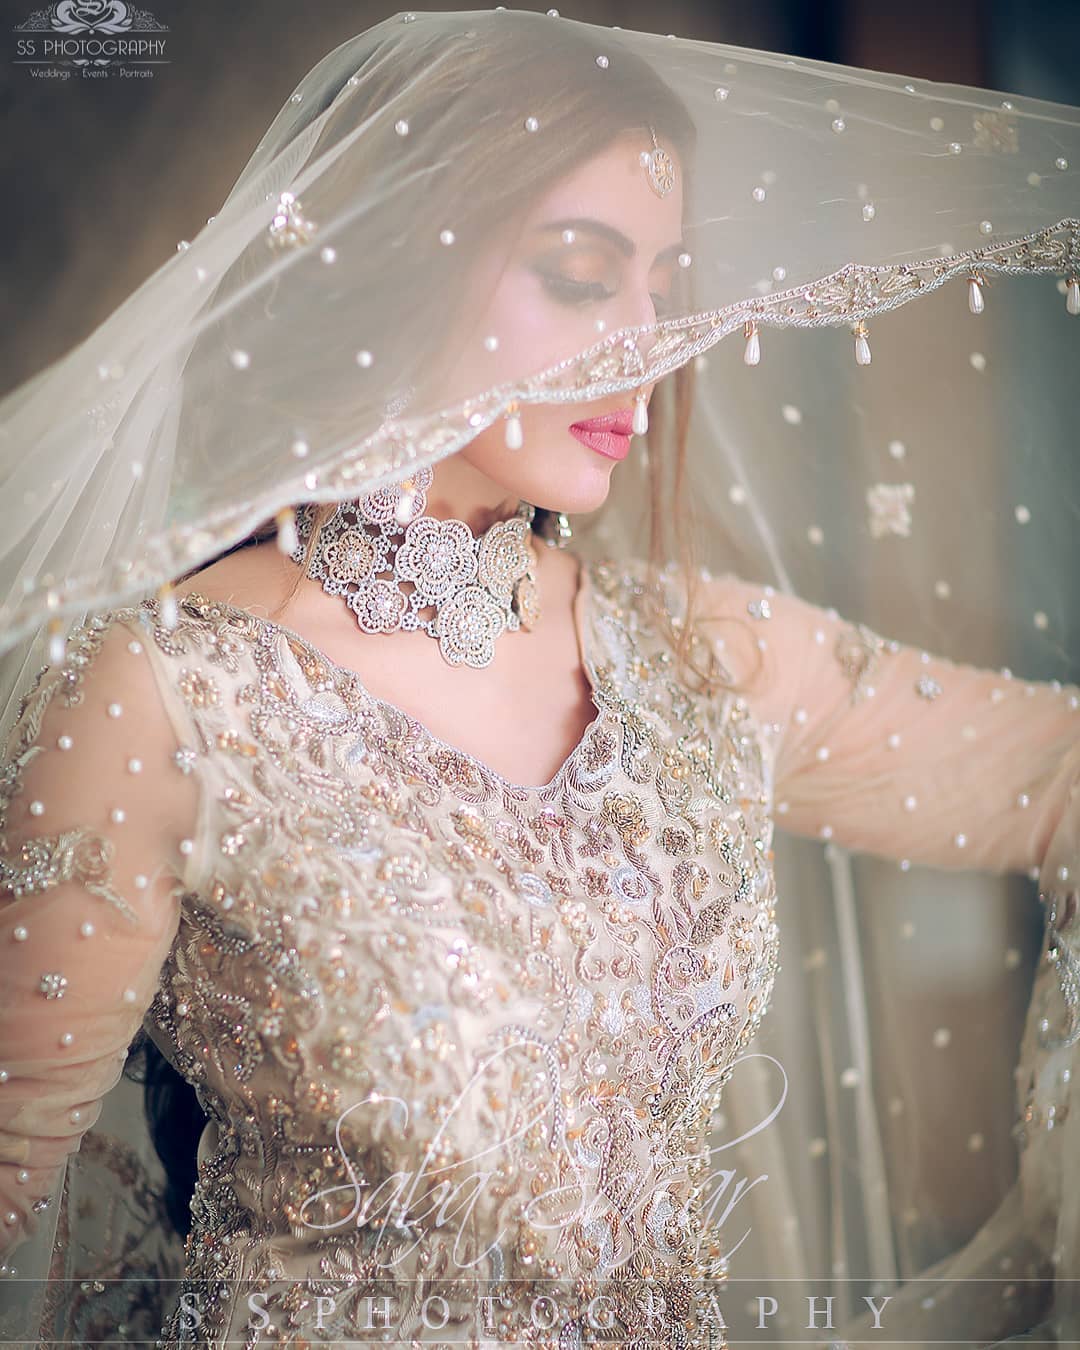 Beautiful Sadia Faisal Awesome Bridal Photoshoot